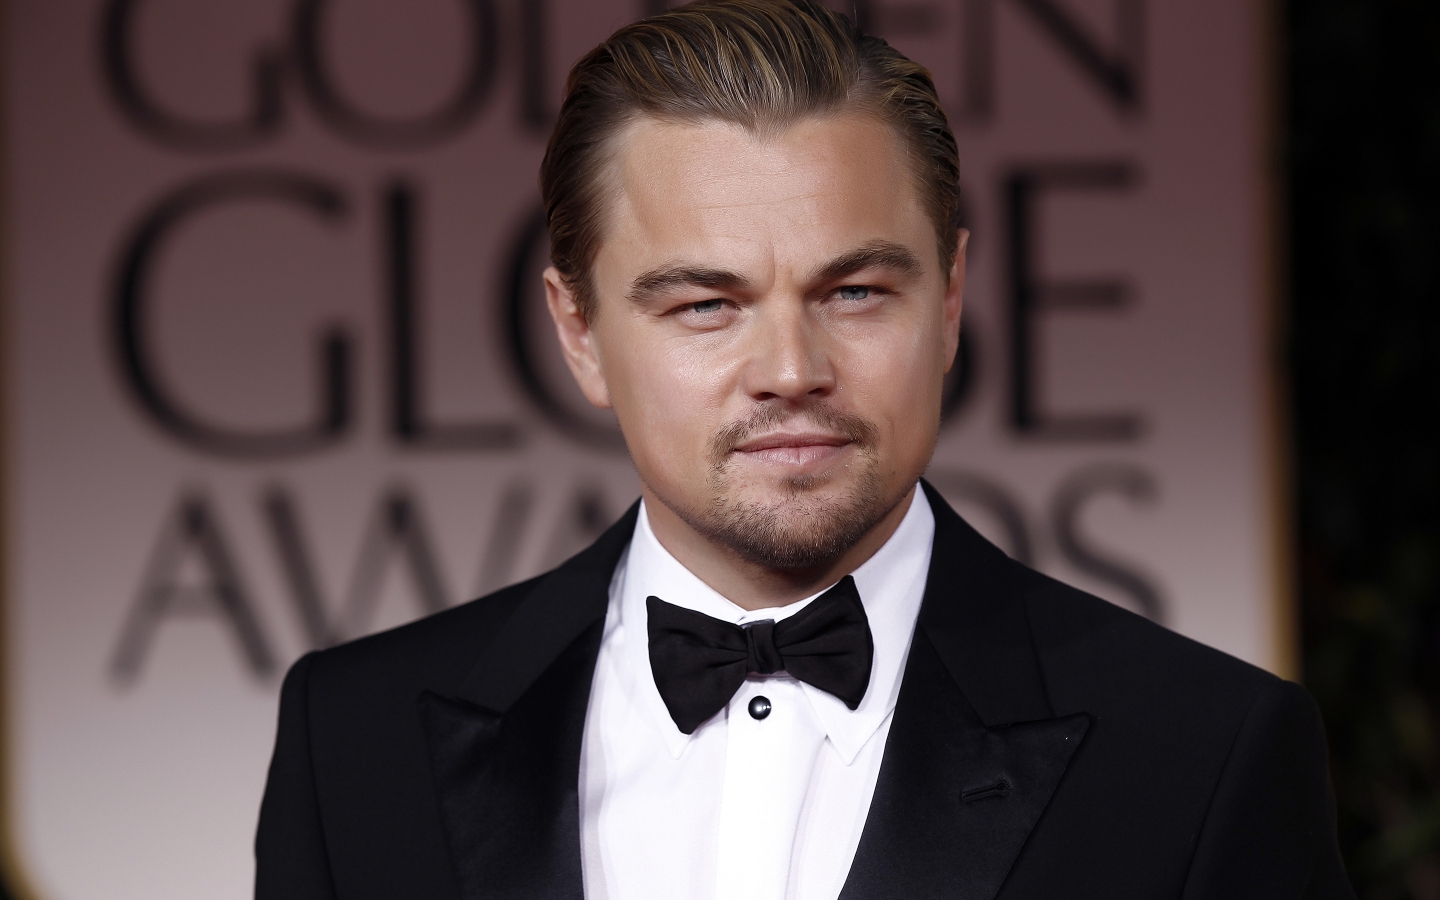 Leonardo DiCaprio in Tuxedo for 1440 x 900 widescreen resolution